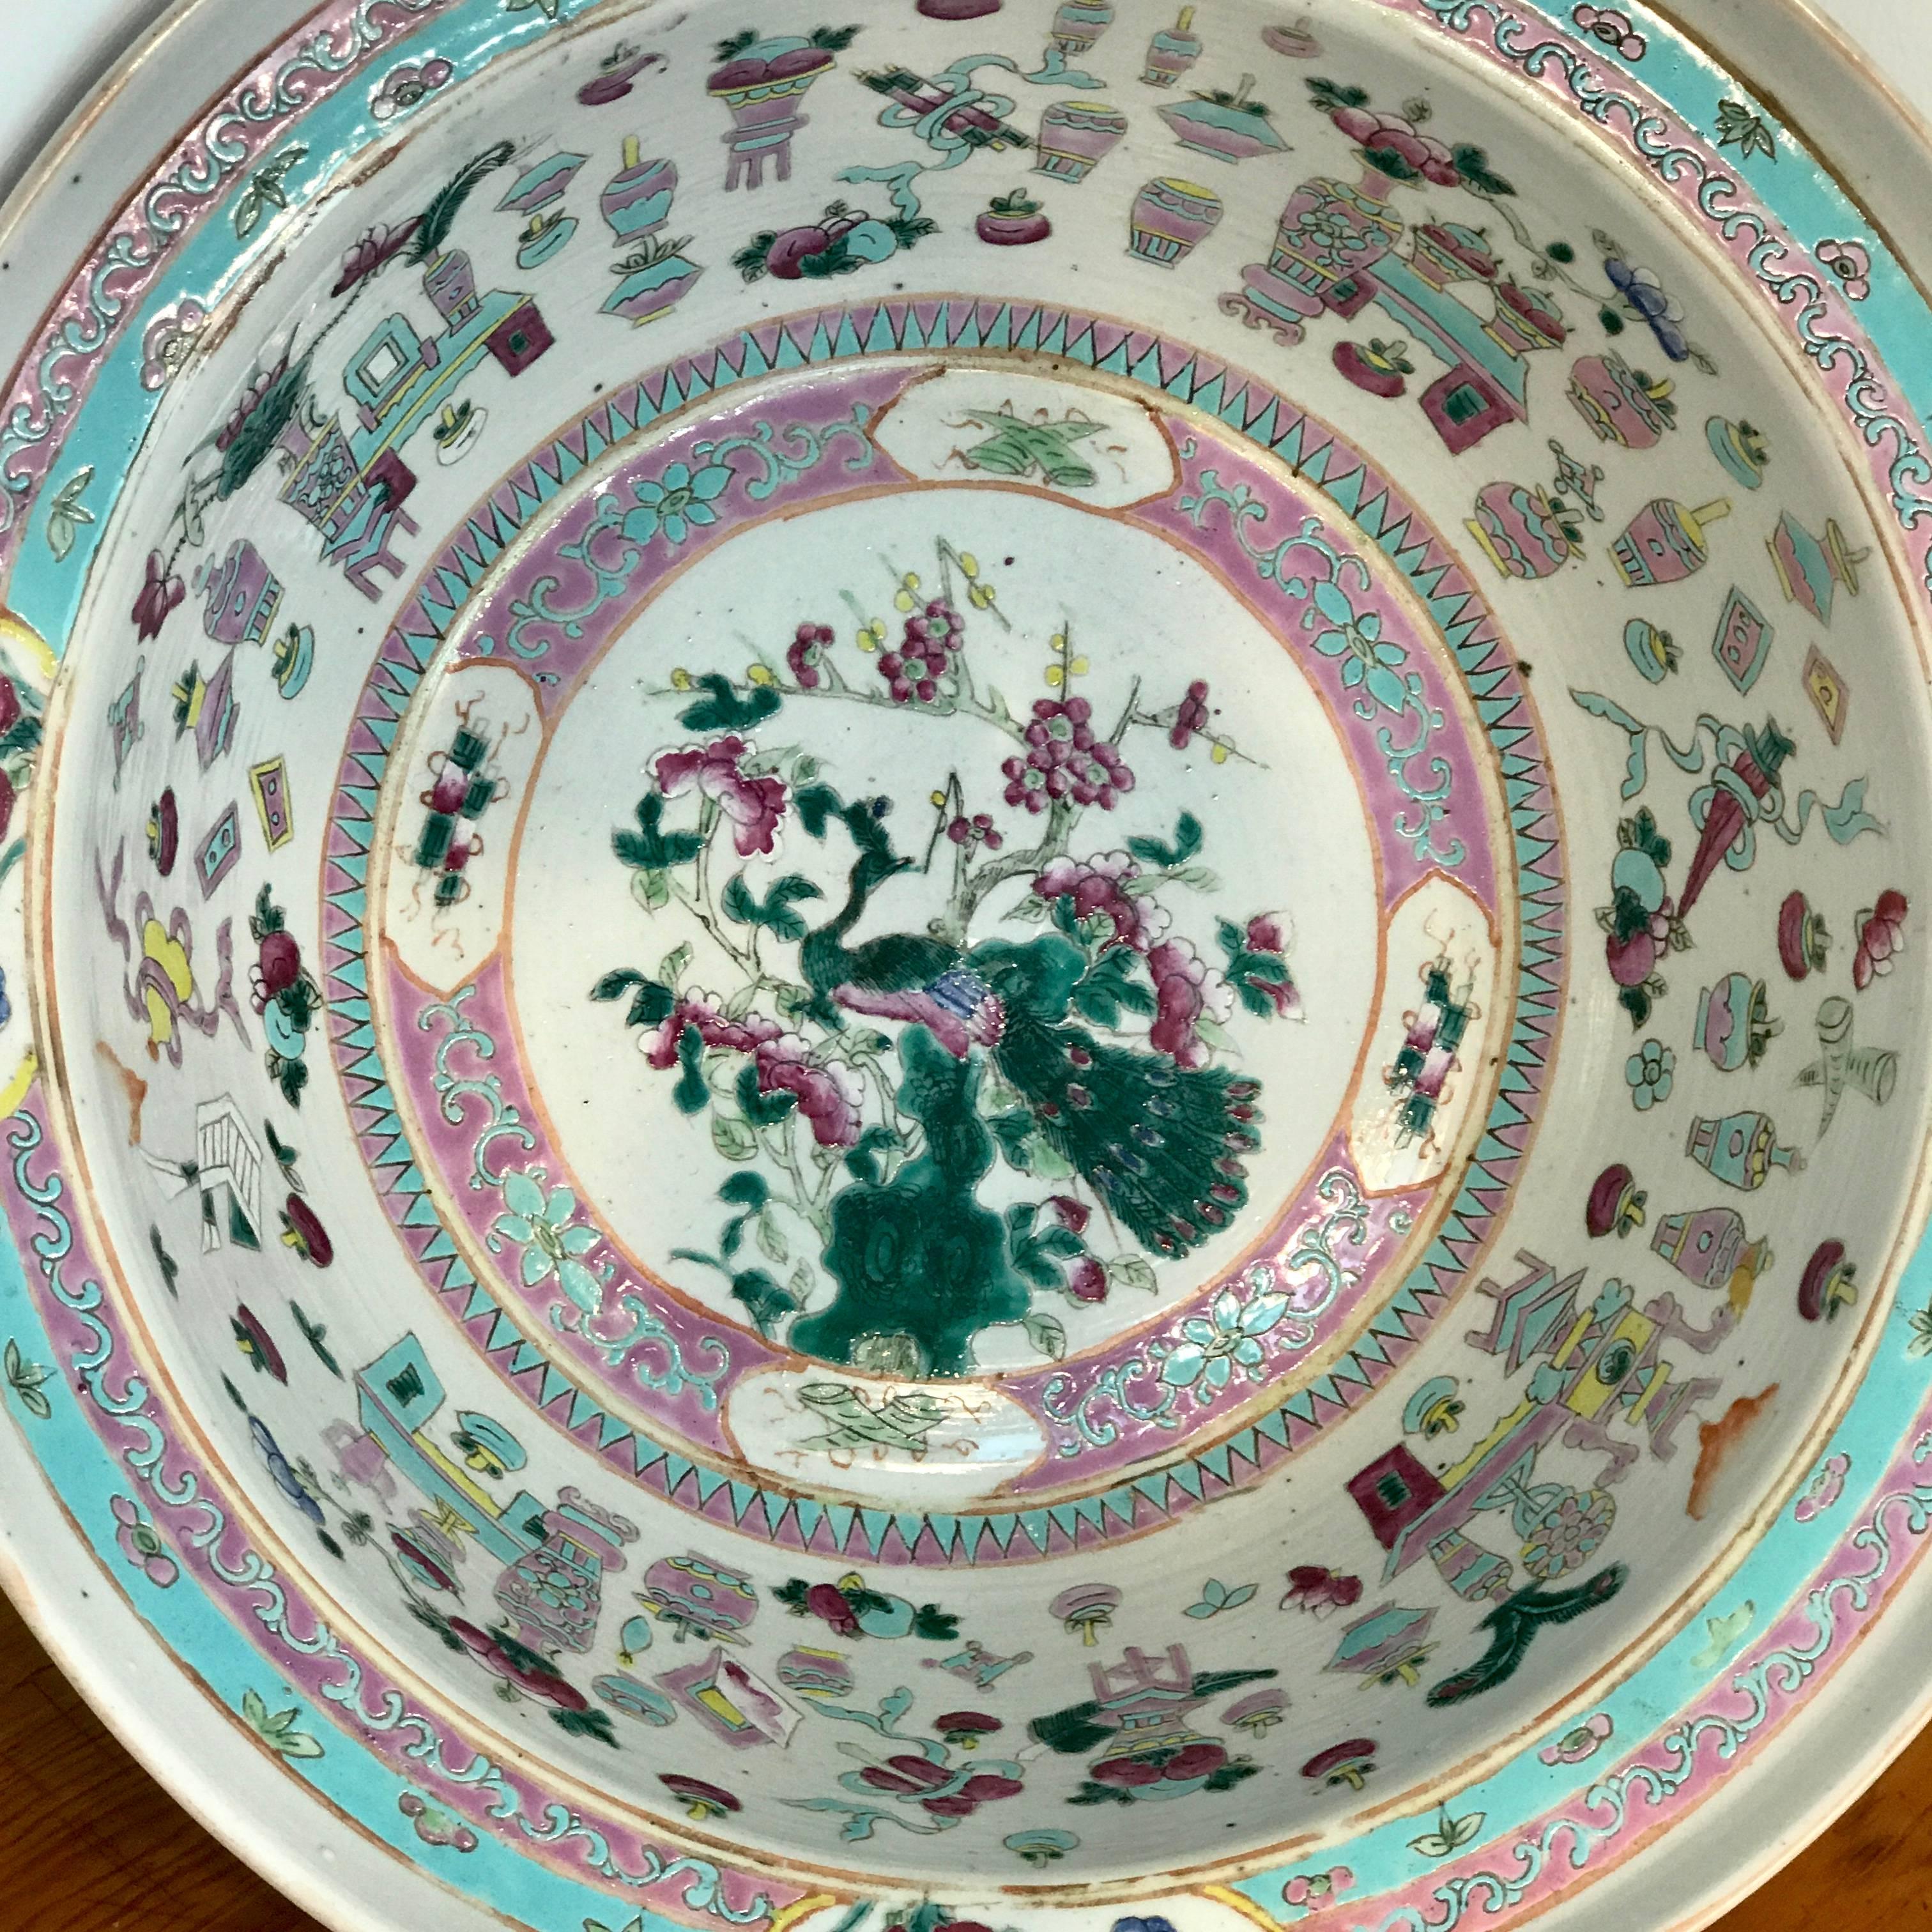 Porcelain Large Qing Dynasty Famille Verte Peacock and Vase Motif Bowl